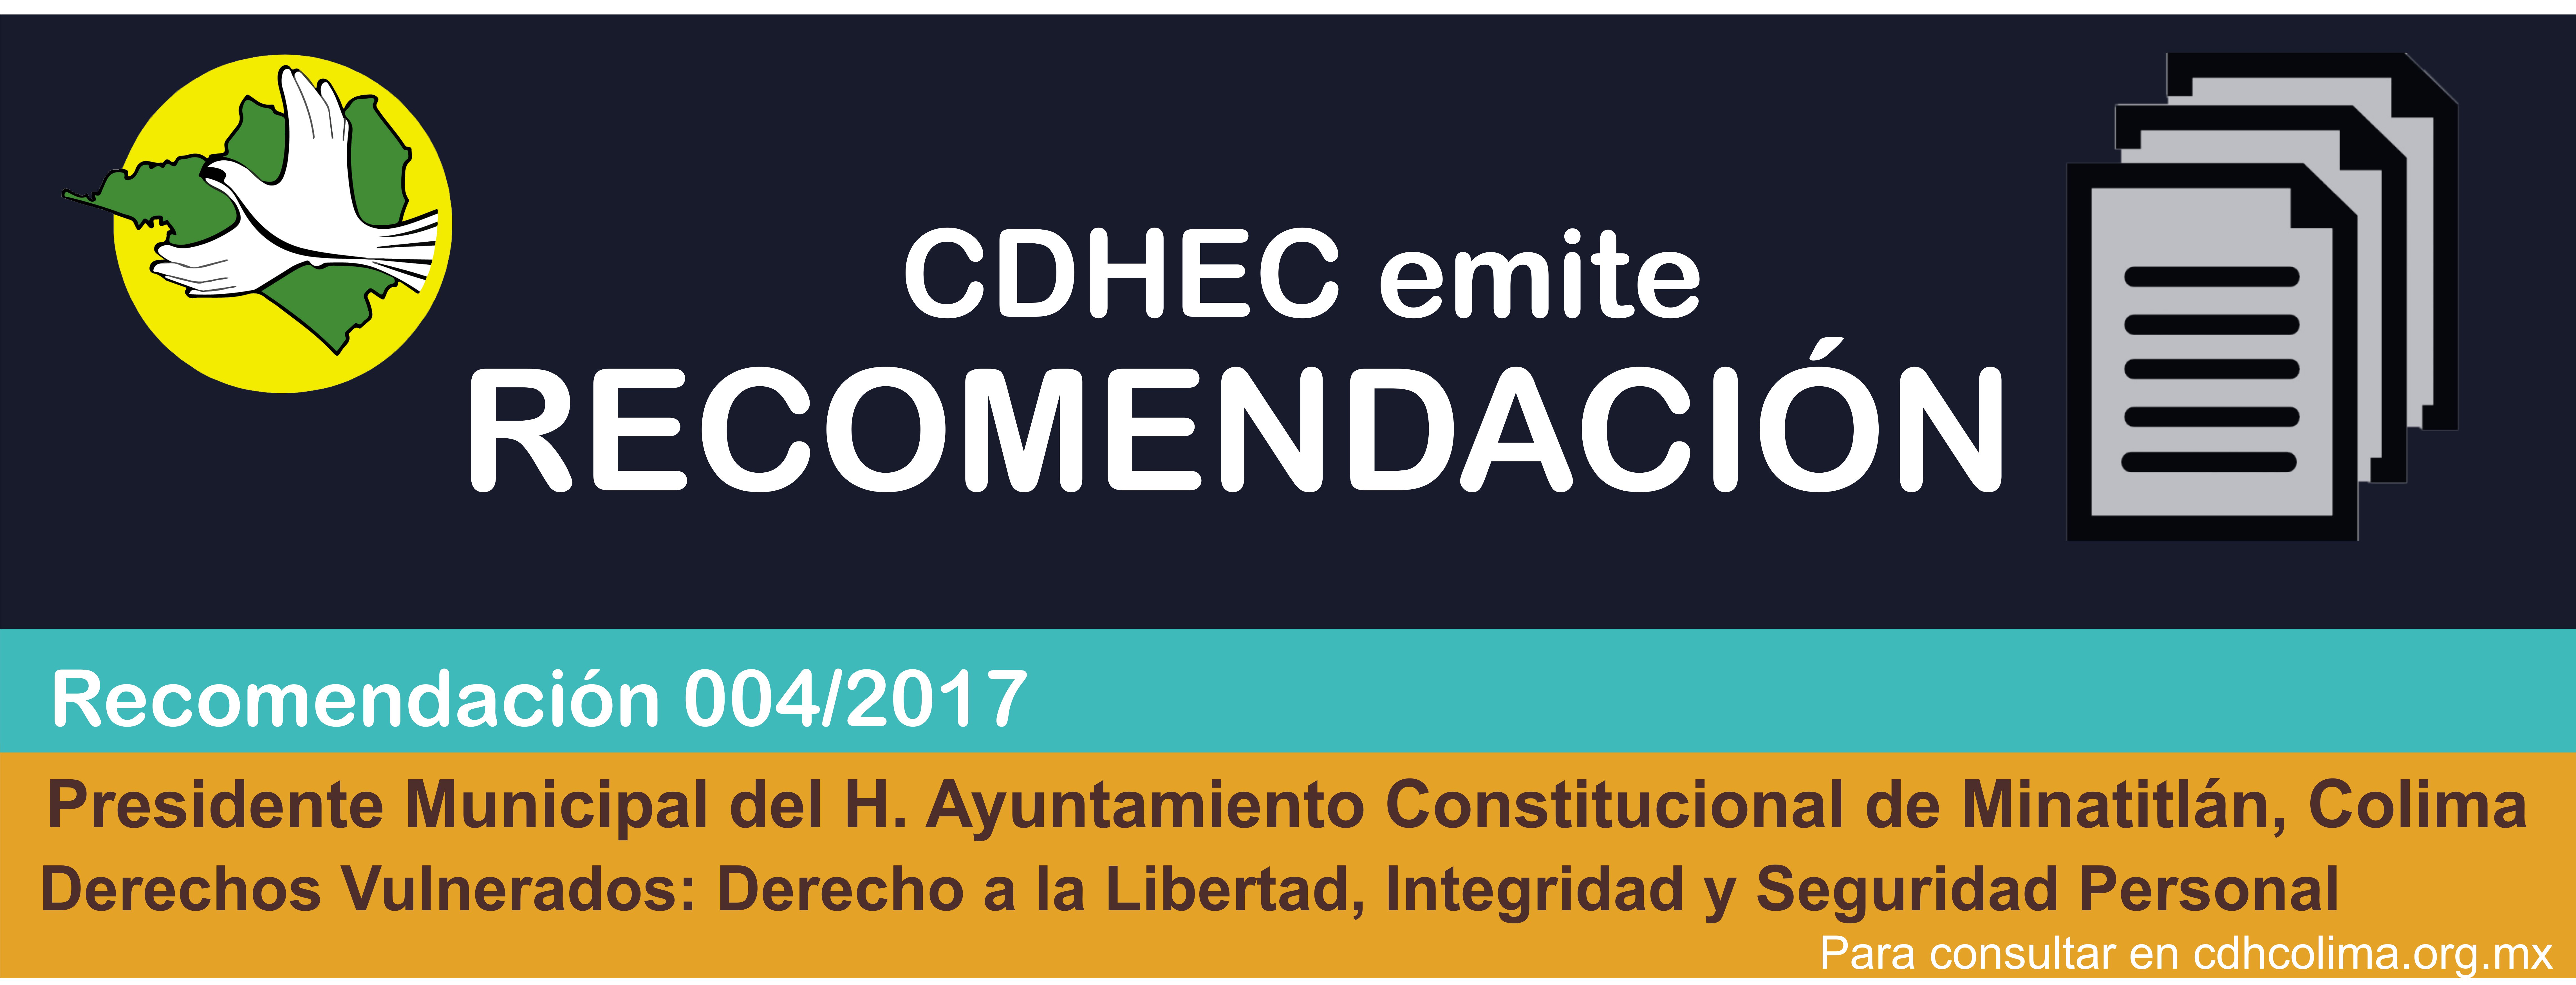 CDHEC emite recomendación